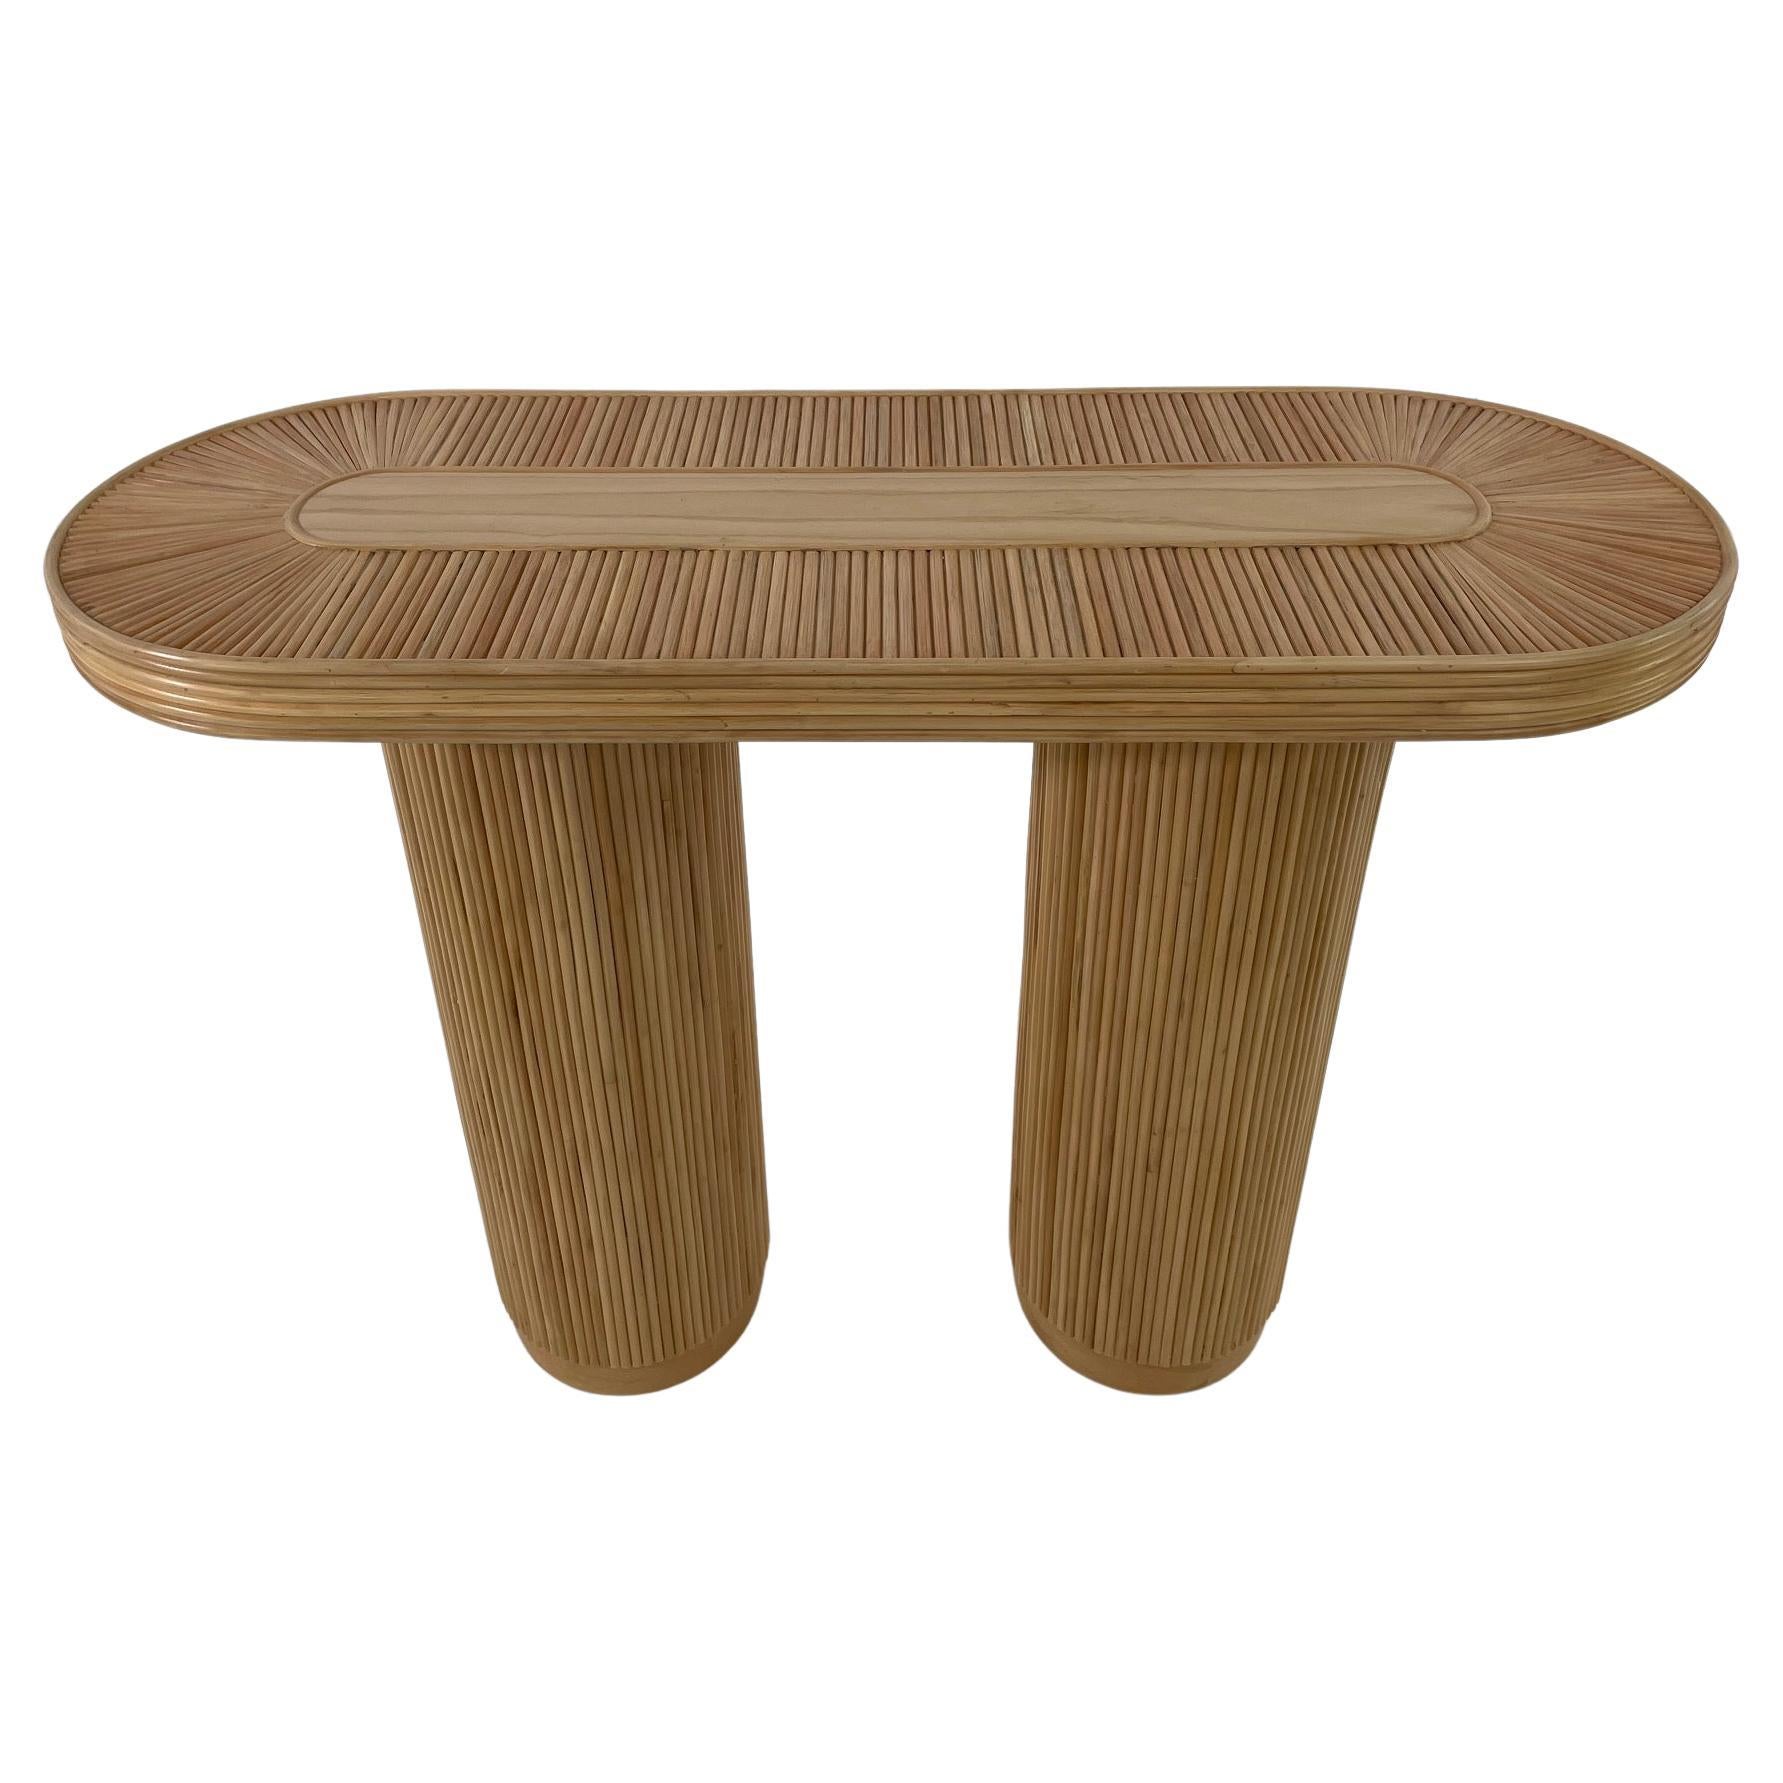 table console ronde et ovale en rotin tressé de style design italien des années 70, composée d'une structure en bois ornée d'une marqueterie de rotin tressé faite à la main, de deux pieds cylindriques (hauteur 72 cm / diamètre 24 cm) et d'un plateau